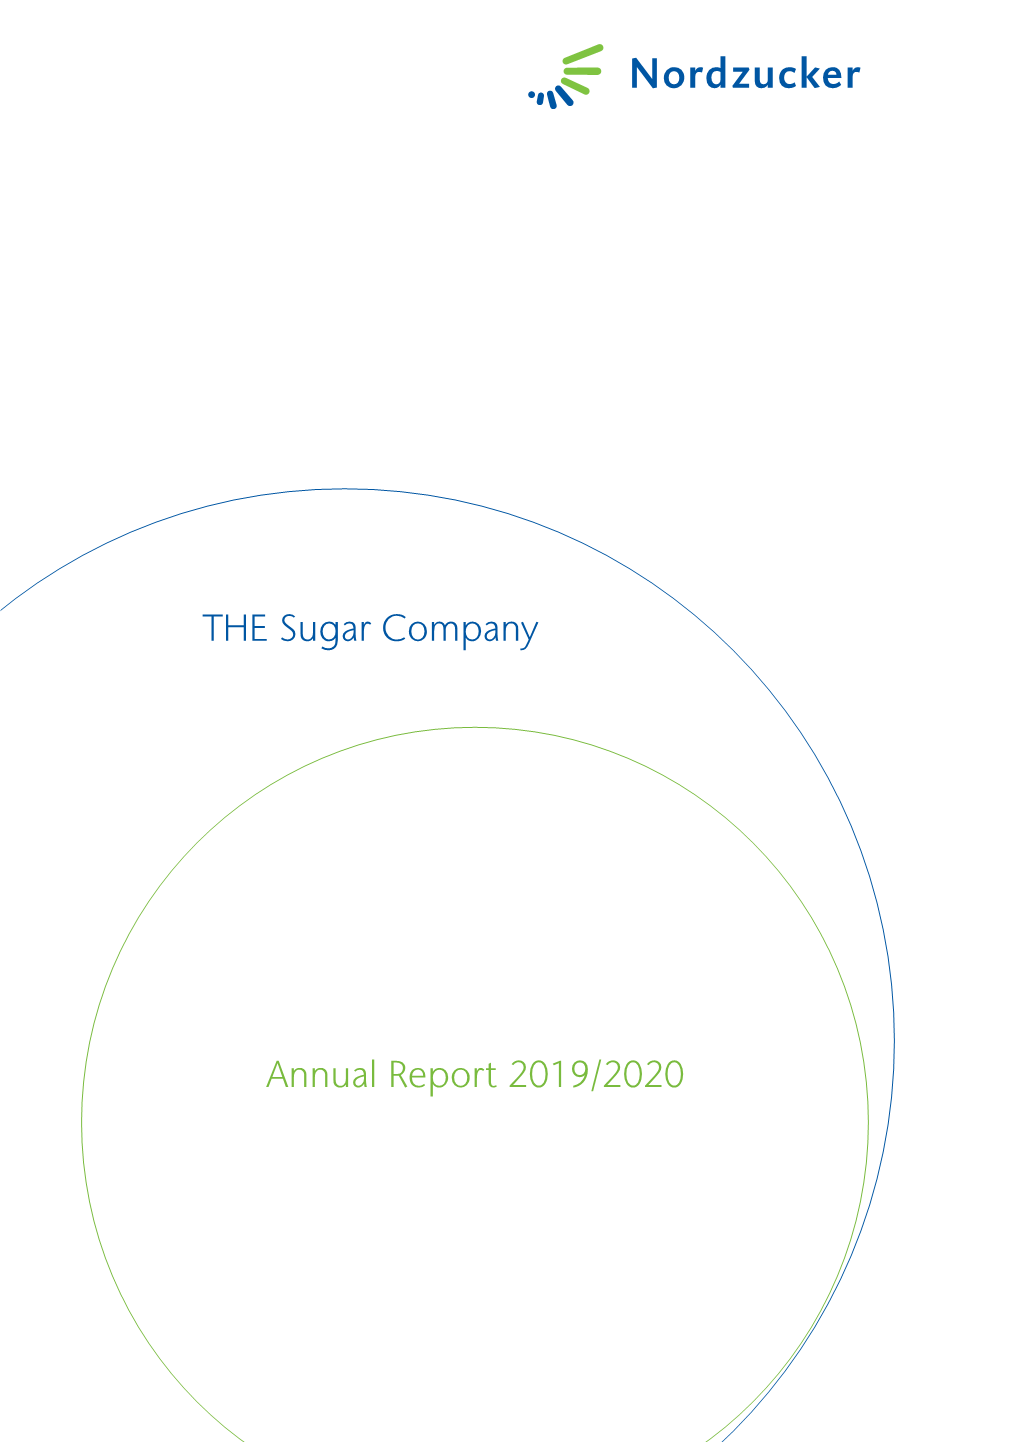 Annual Report 2019/2020 the Sugar Company